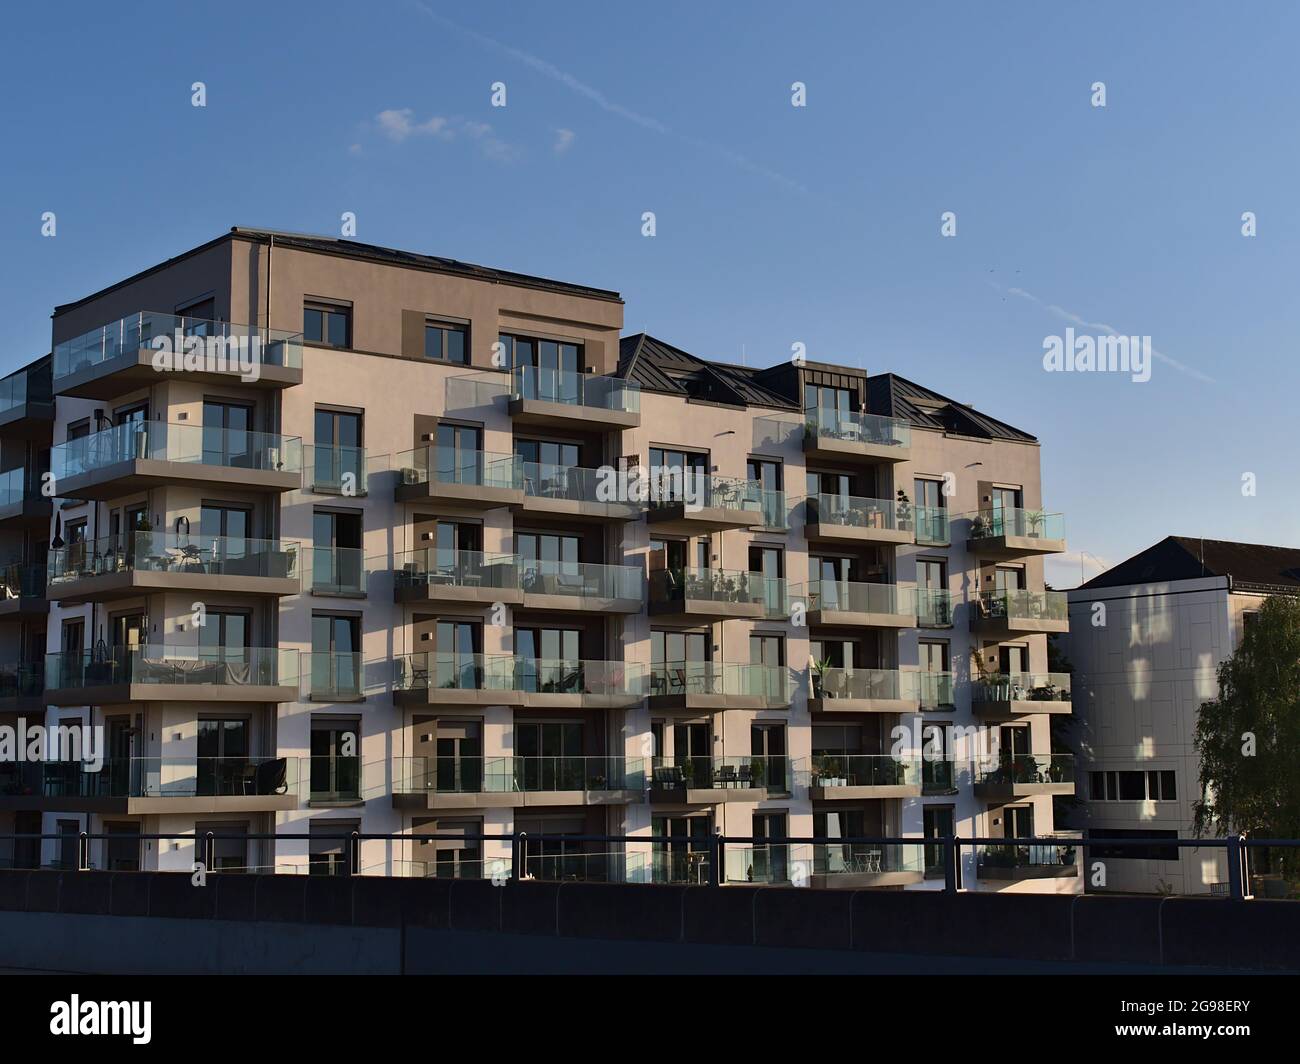 Vue sur moderne immeuble résidentiel multi-famille de qualité luxueuse avec balcons avec balustrades en verre dans le soleil du soir avec ciel bleu. Banque D'Images